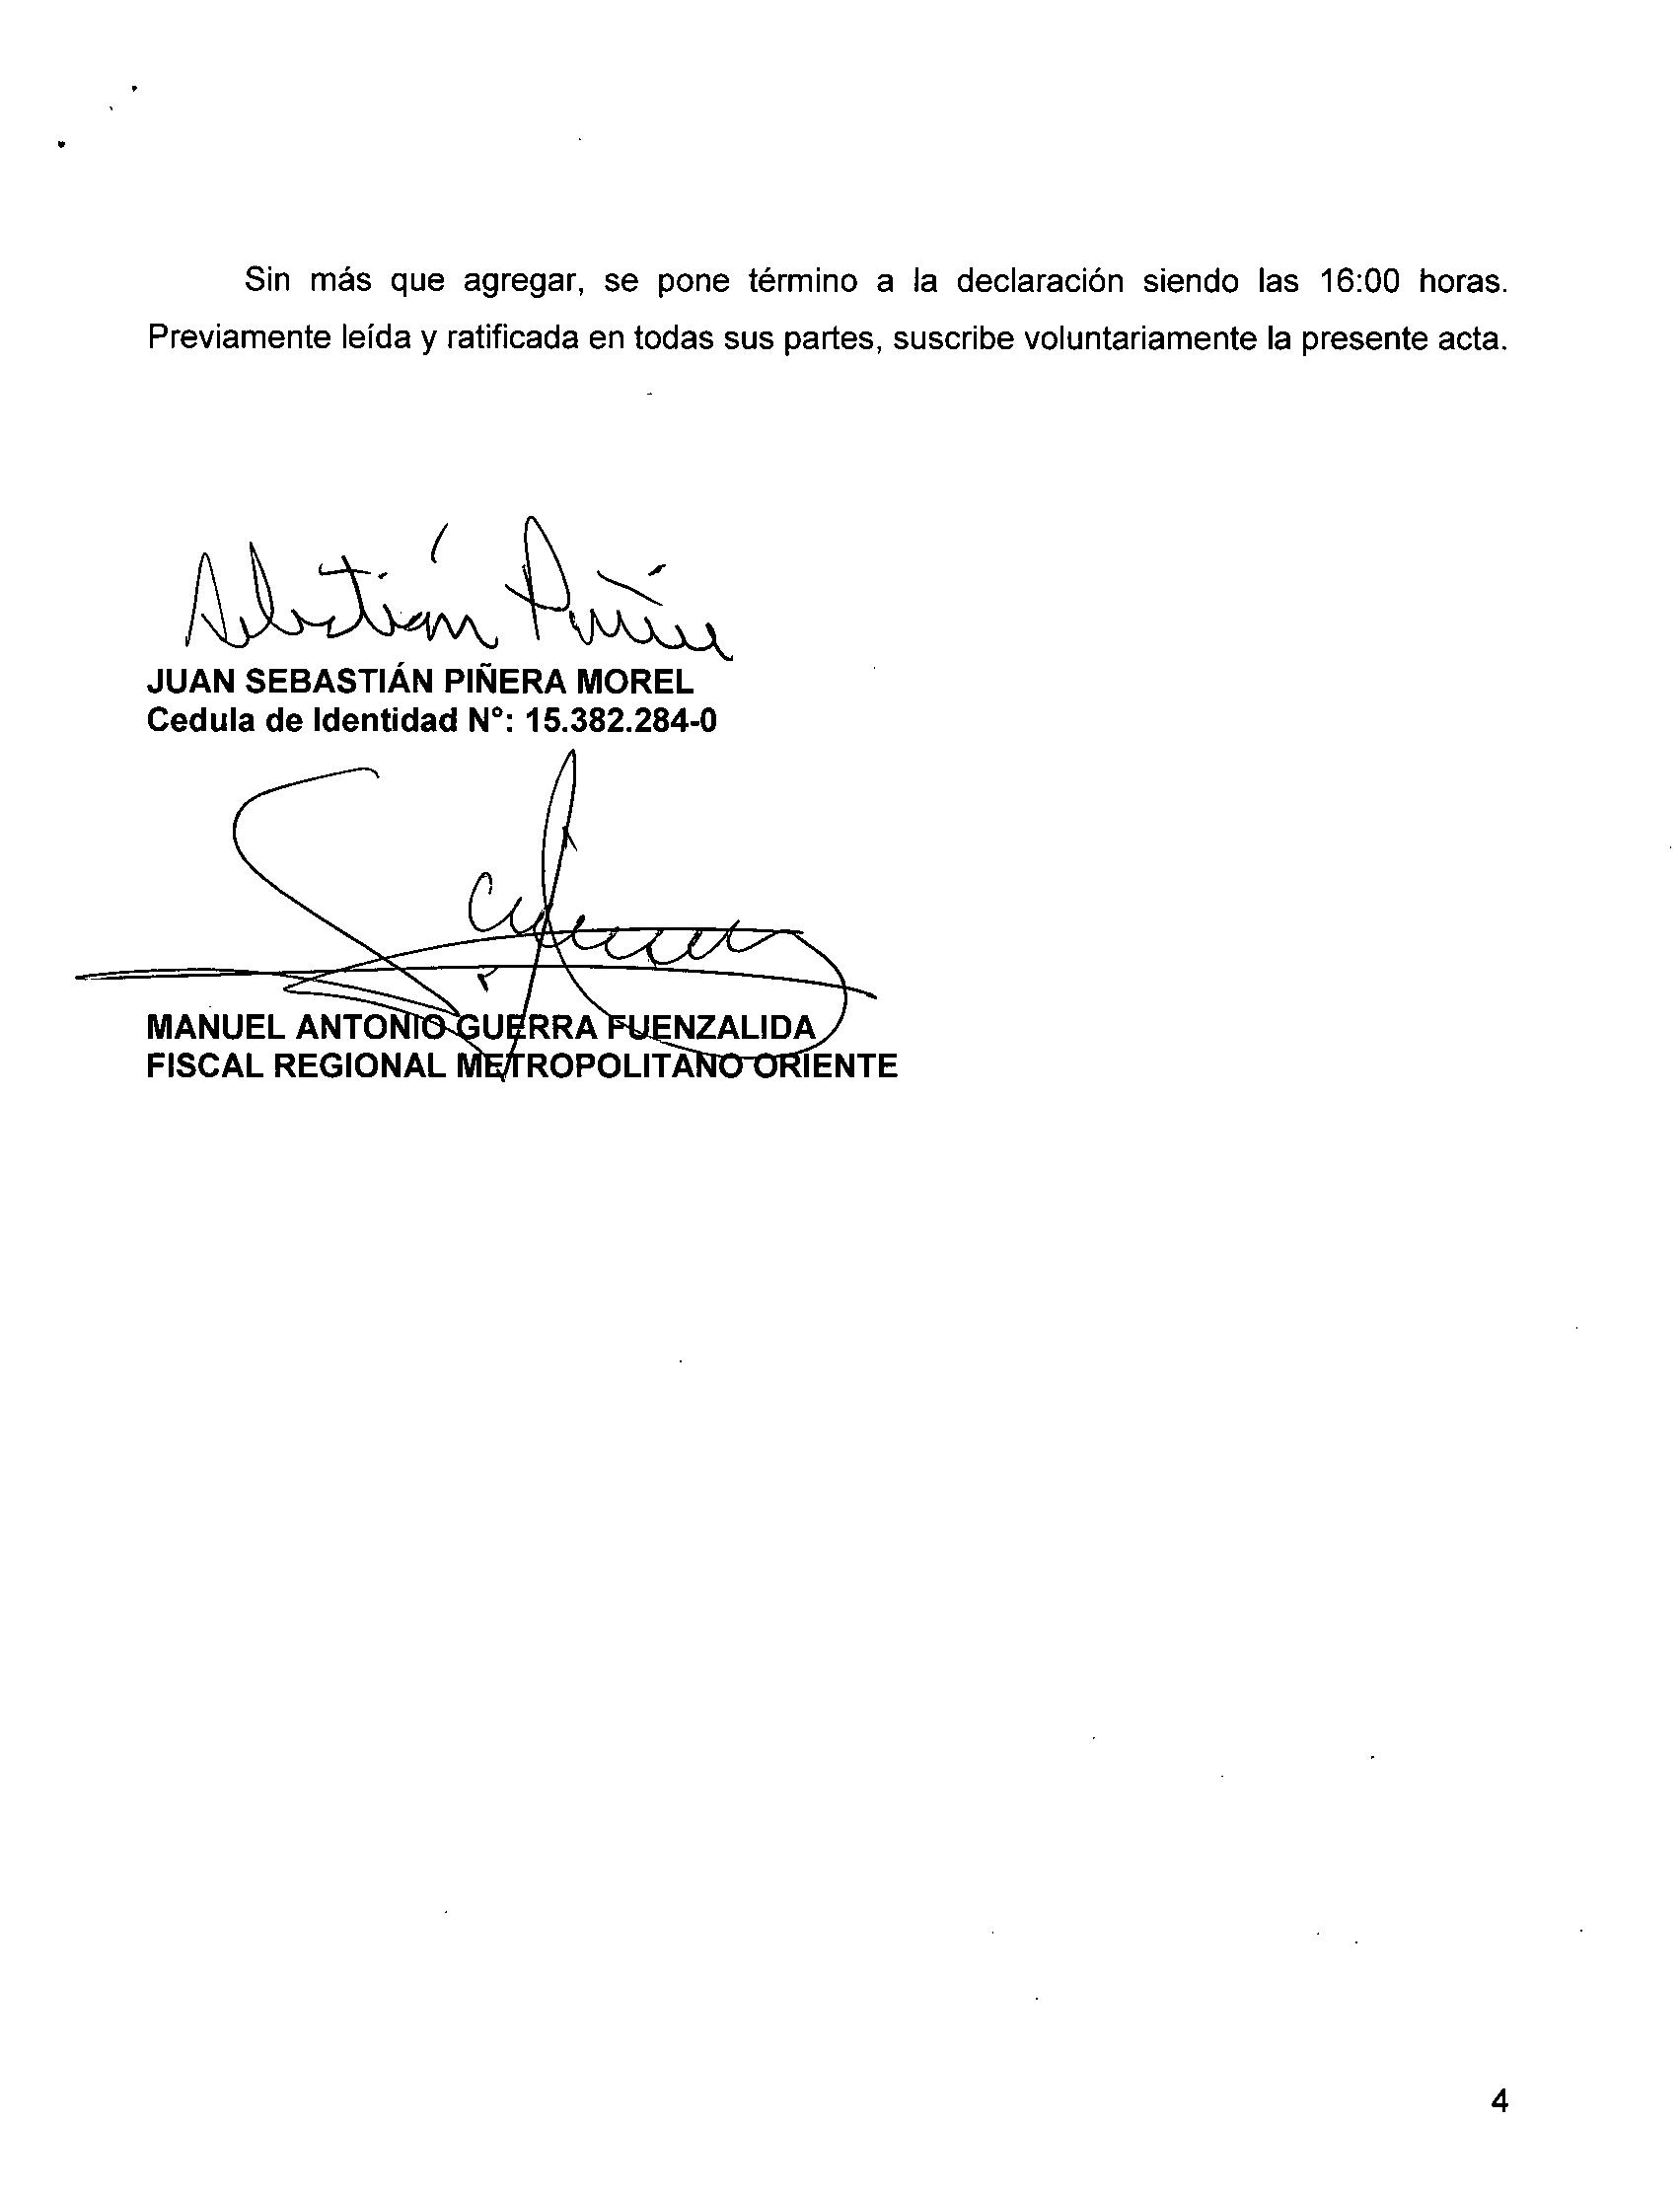 Declaración de Piñera Morel